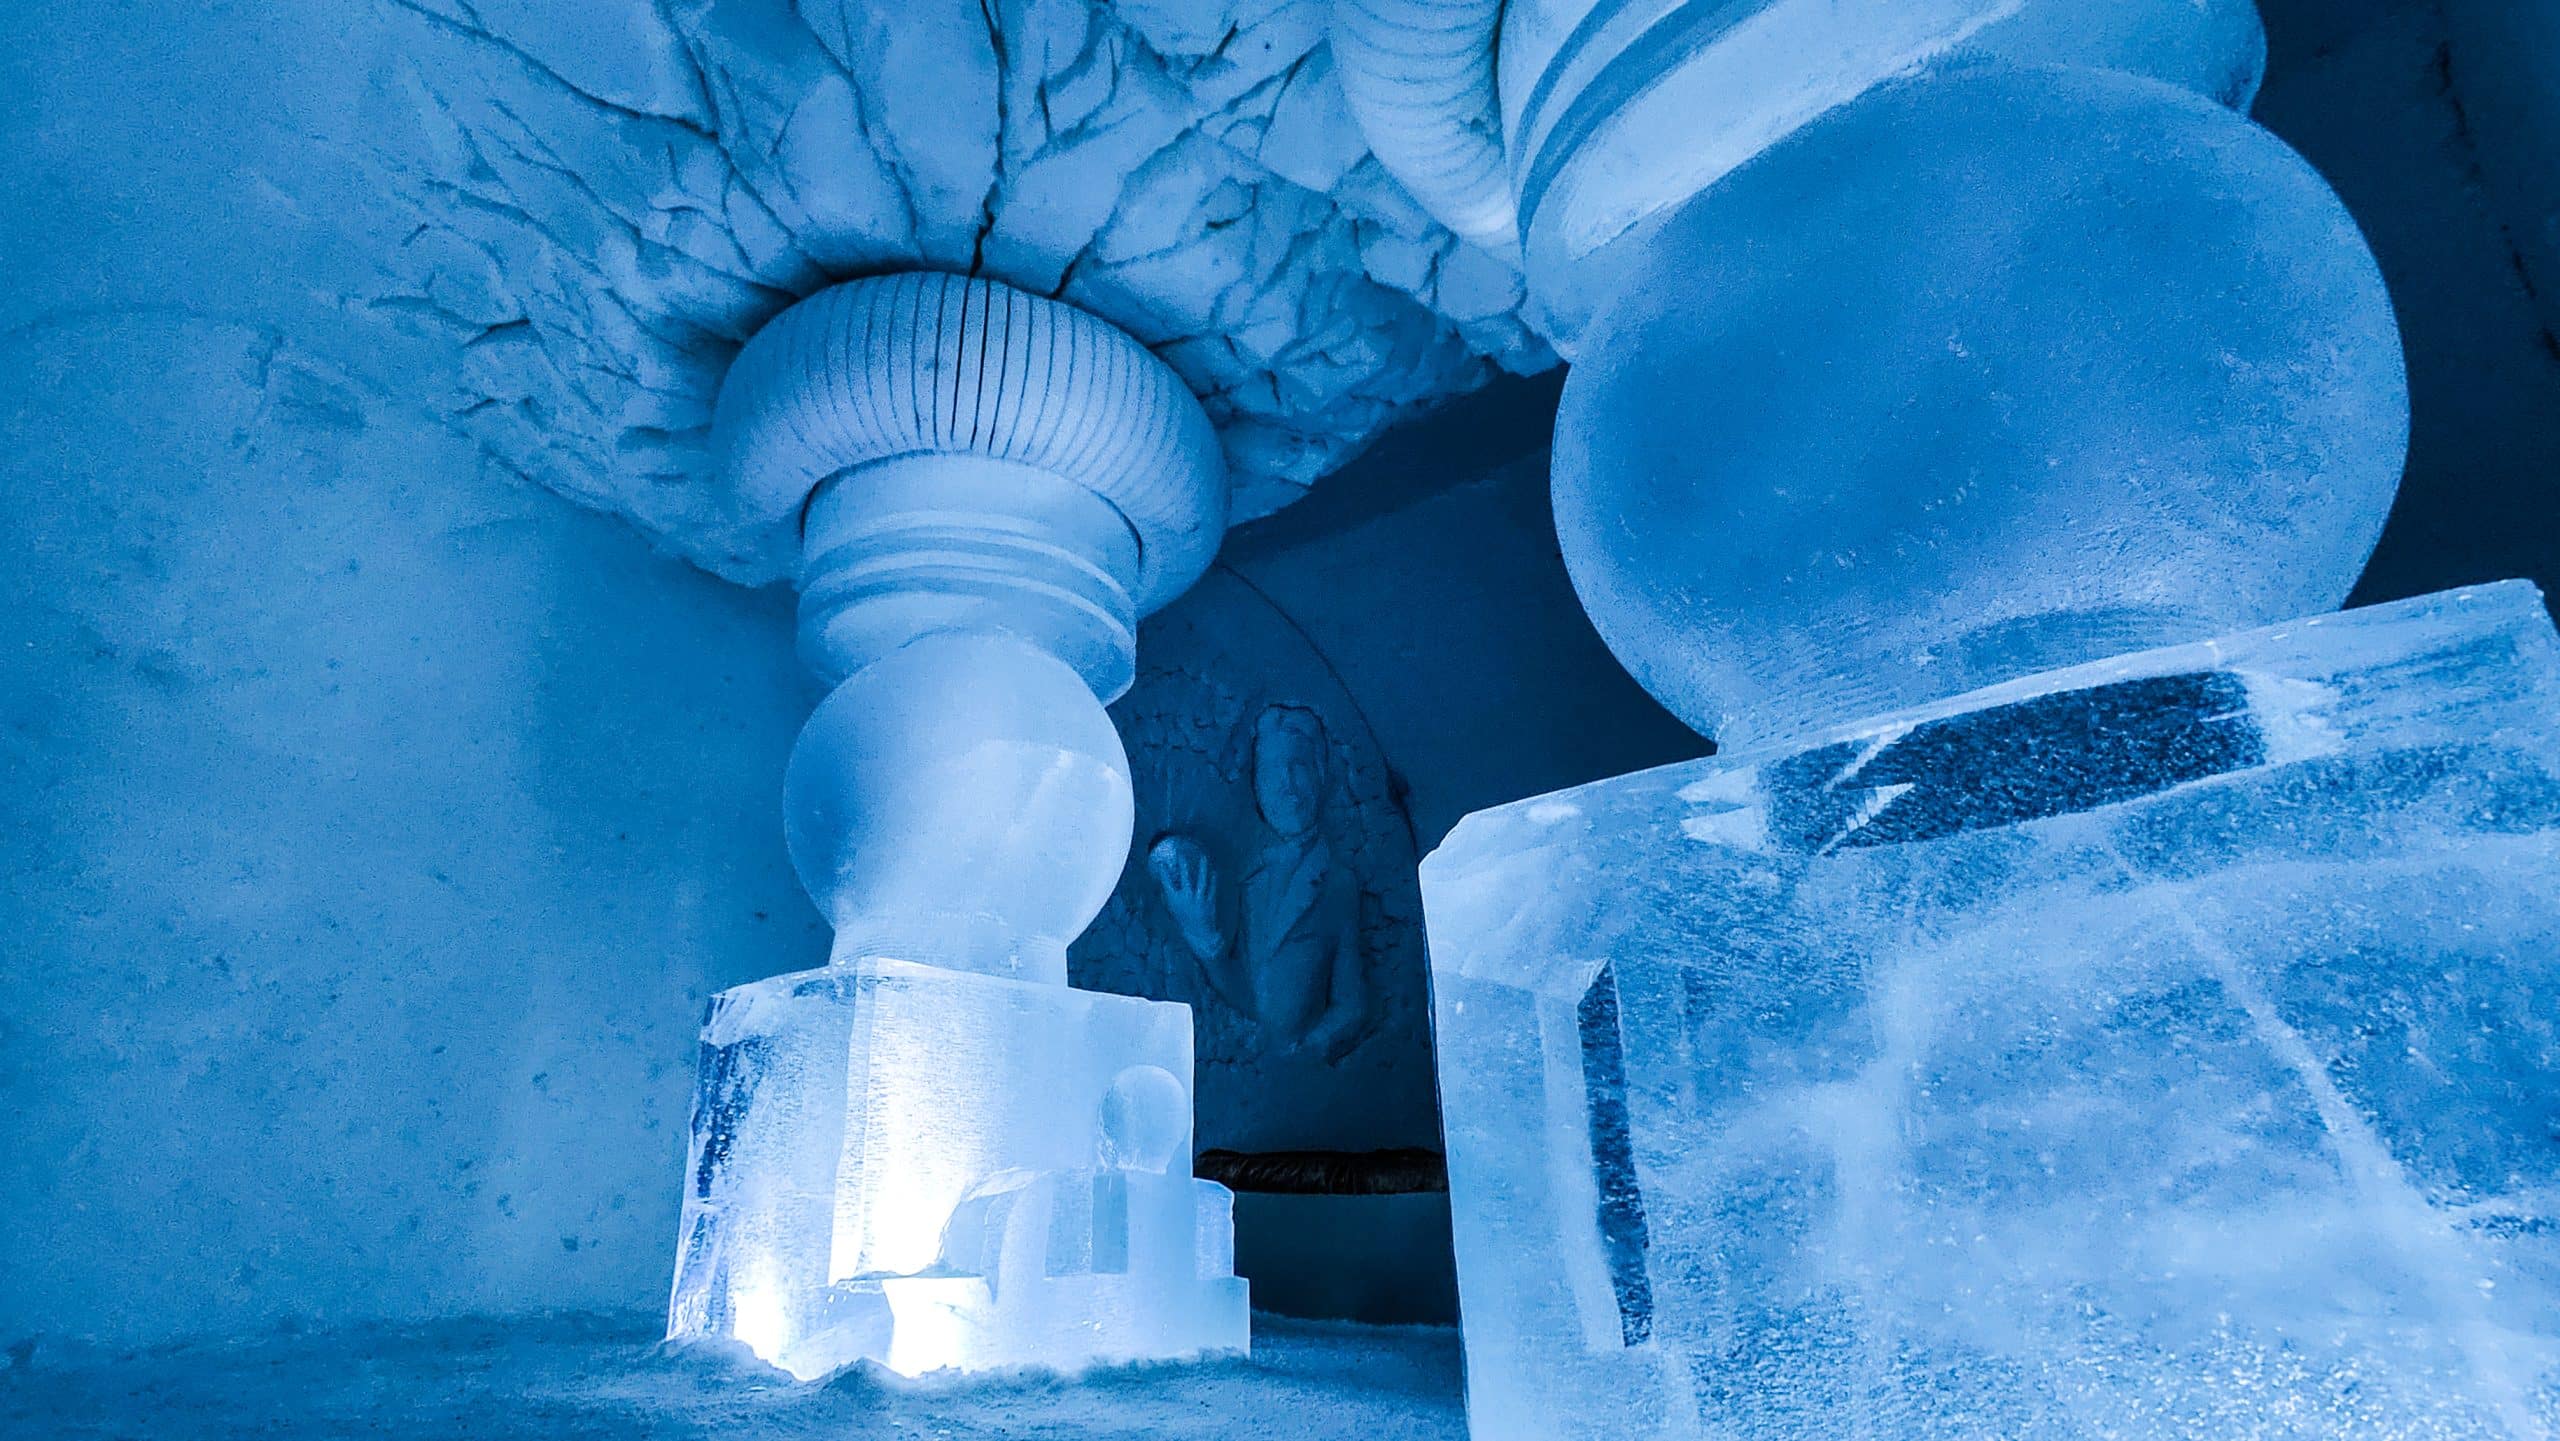 Artic Snow Hotel Finlande sculture glace